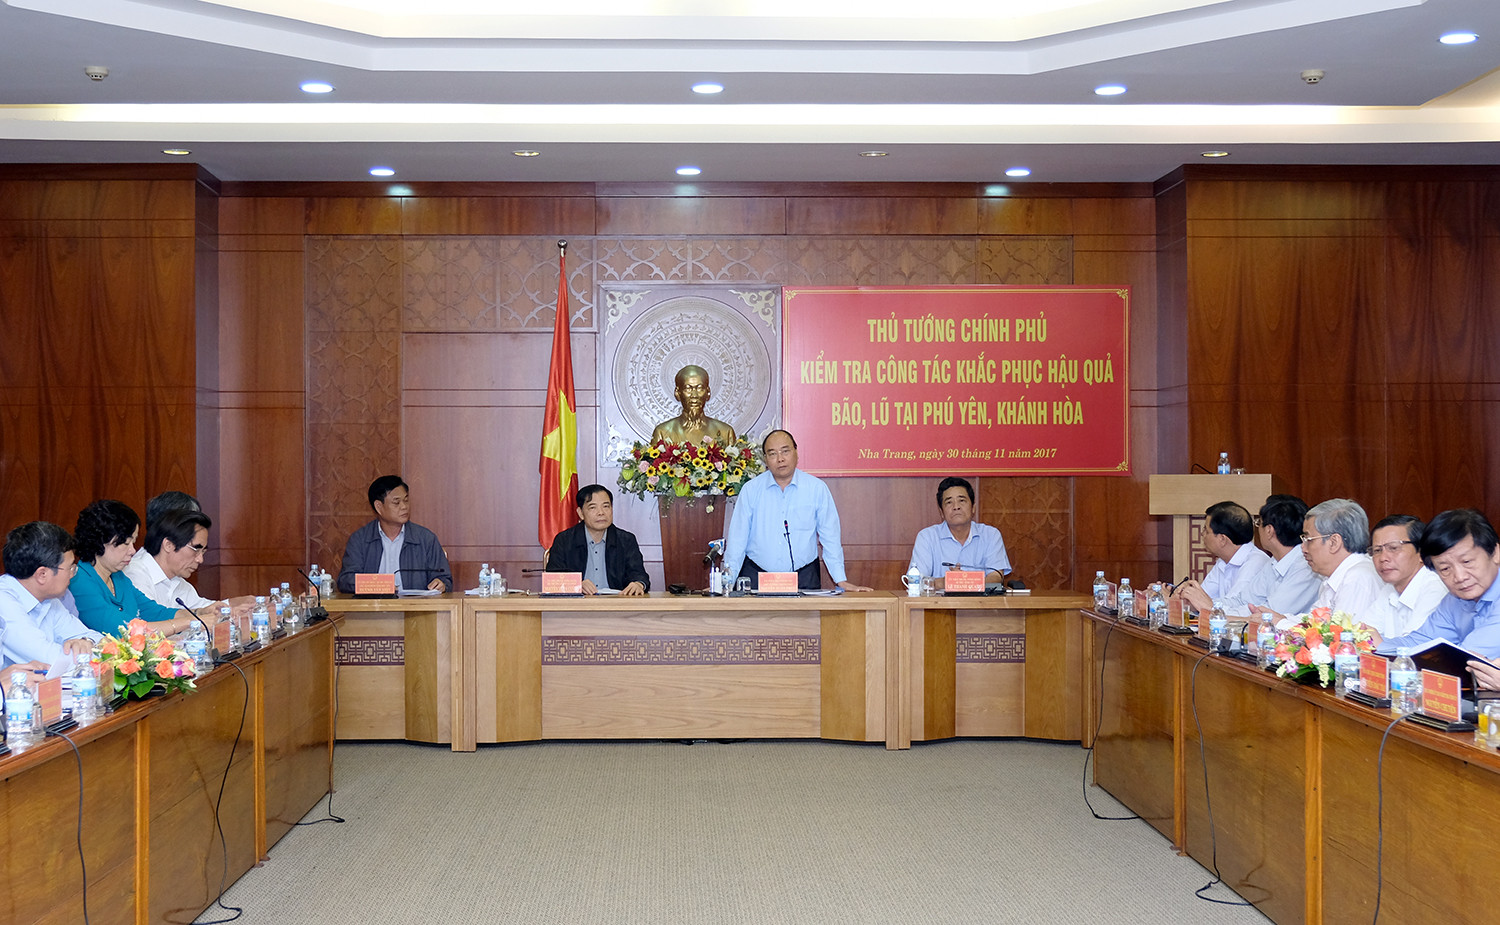 Thủ tướng làm việc về công tác khắc phục hậu quả bão số 12 tại Phú Yên, Khánh Hòa